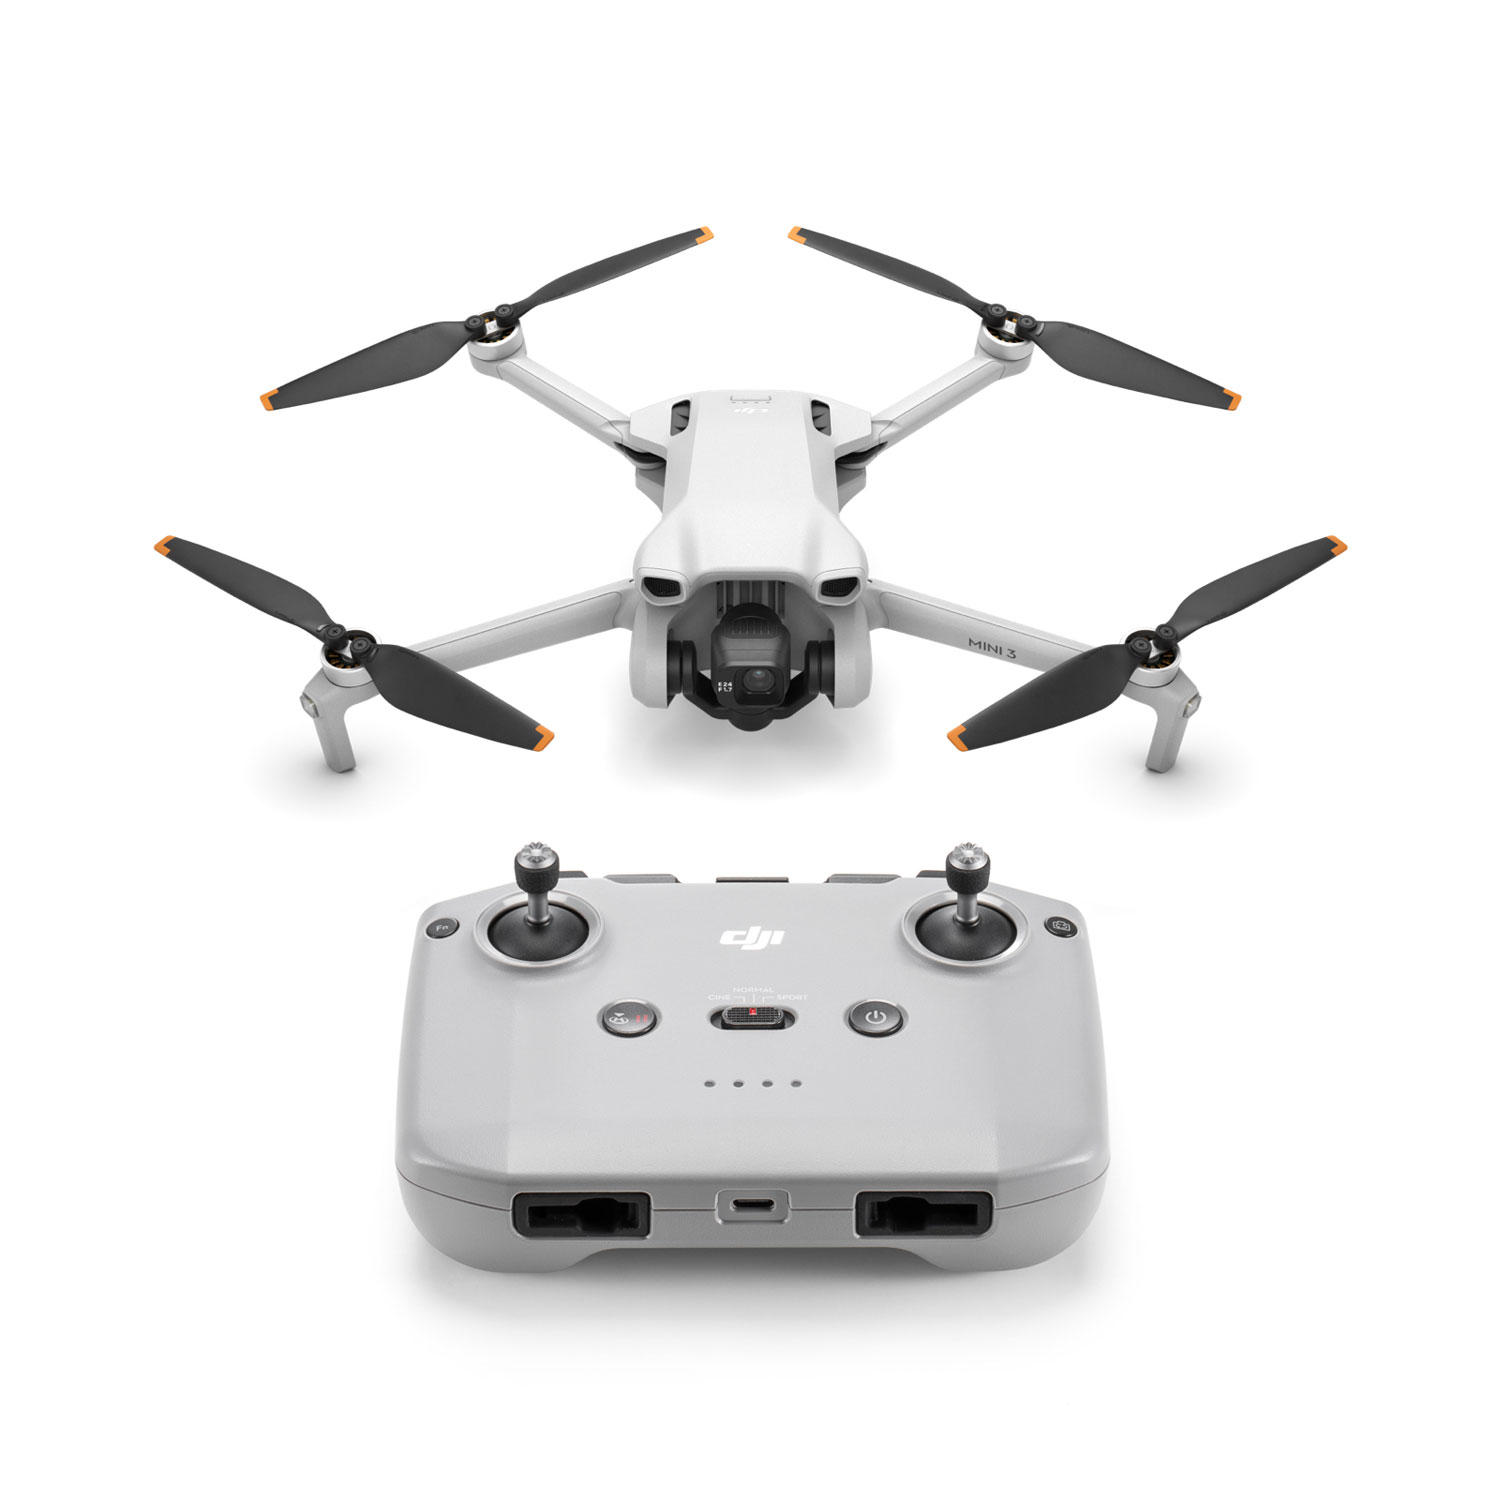 DJI Mini 3 Quadcopter Drone with Remote Control - Grey